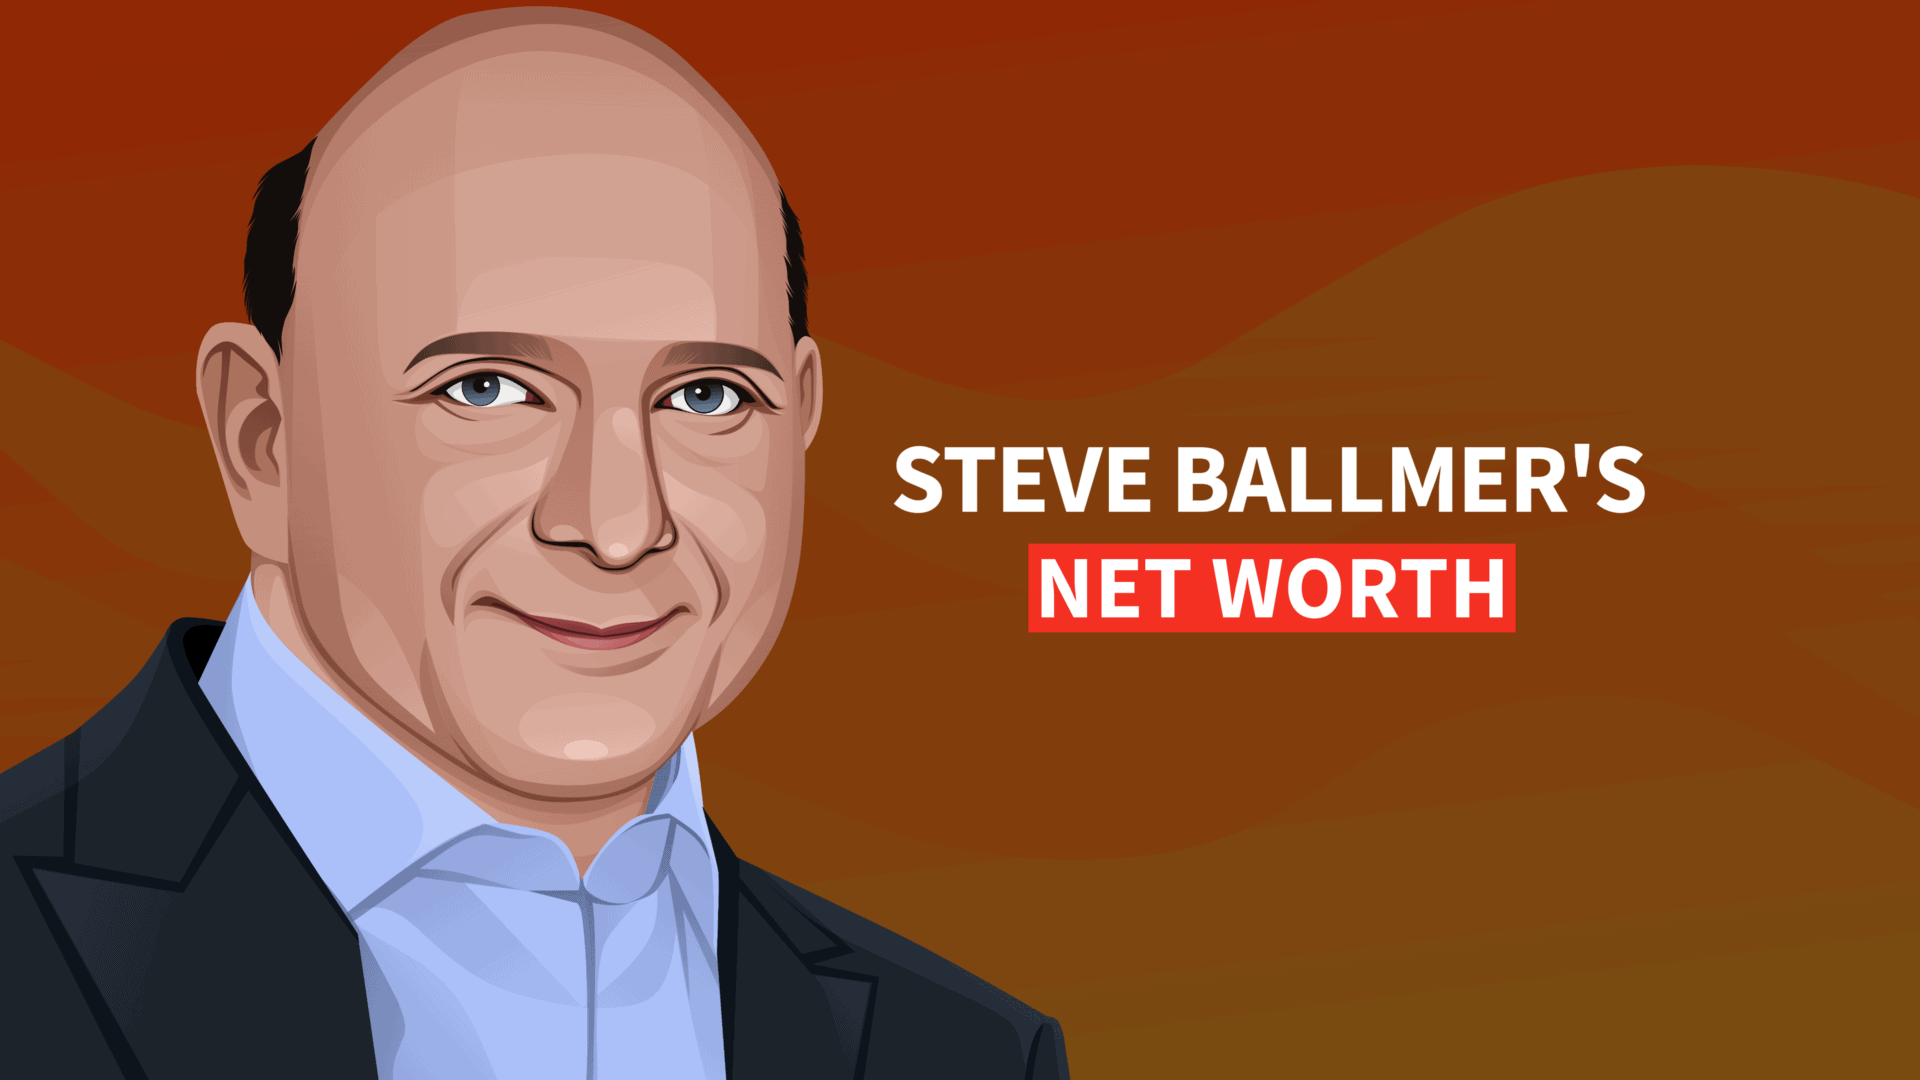 Steve Ballmer's net worth